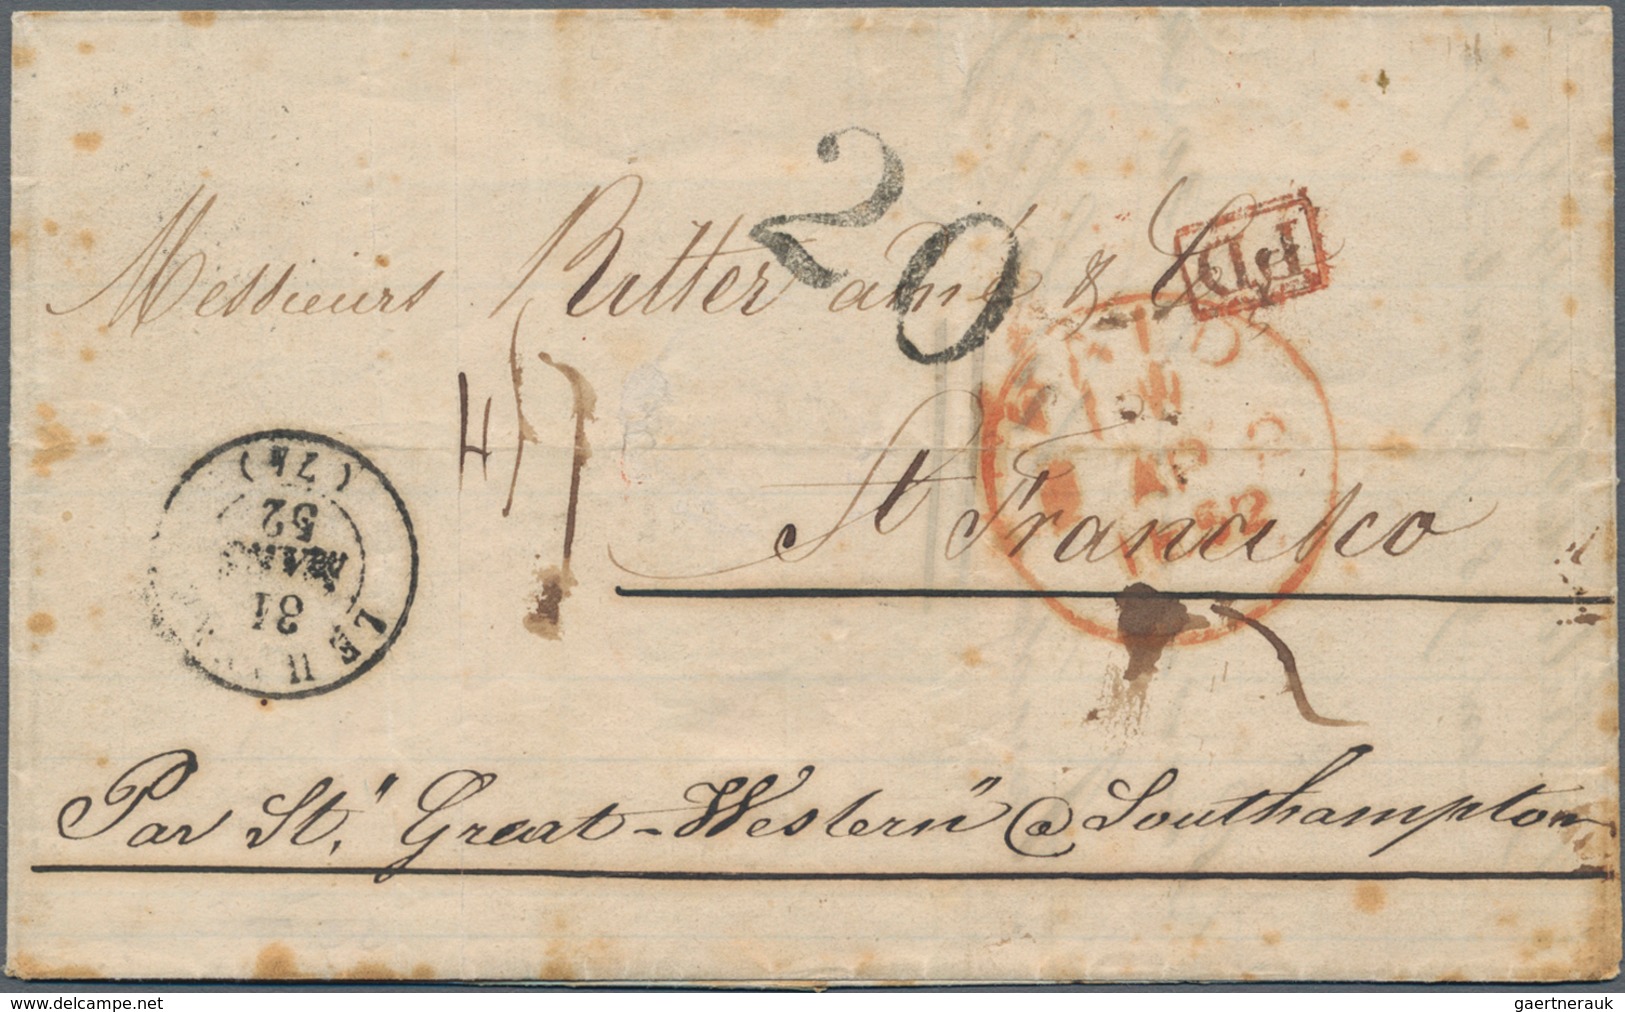 Schweiz: 1852 Rechung Von A. Kohler & Fils, Lausanne (datiert 16. März 1852) Nach San Francisco, 'fo - Unused Stamps